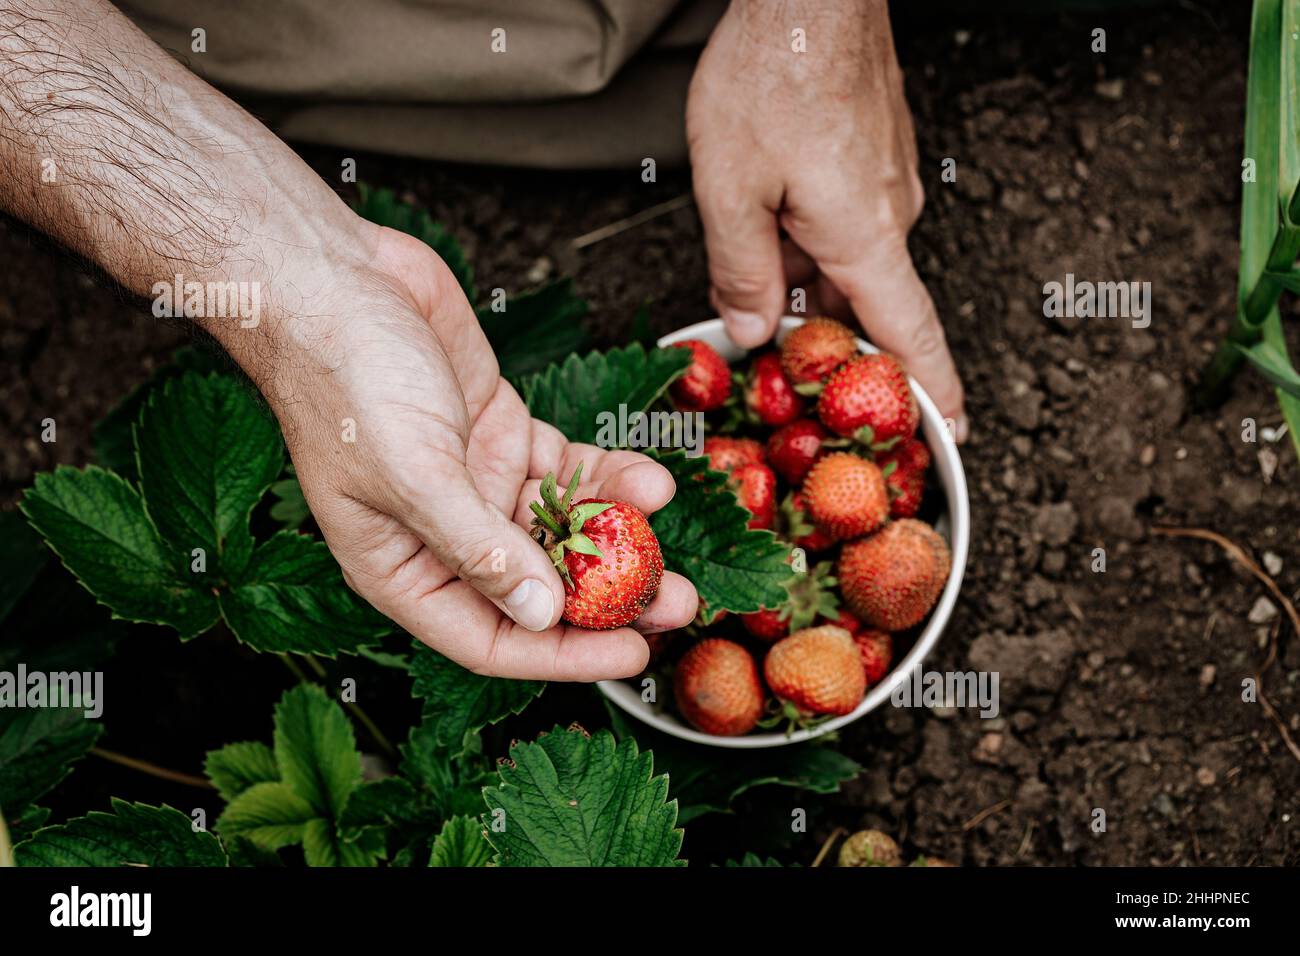 Die Hände des Bauern halten eine Schüssel mit reifen Erdbeeren. Ein Mann pflückt Erdbeeren. Natürliches Bio-Landwirtschaftsprodukt Stockfoto